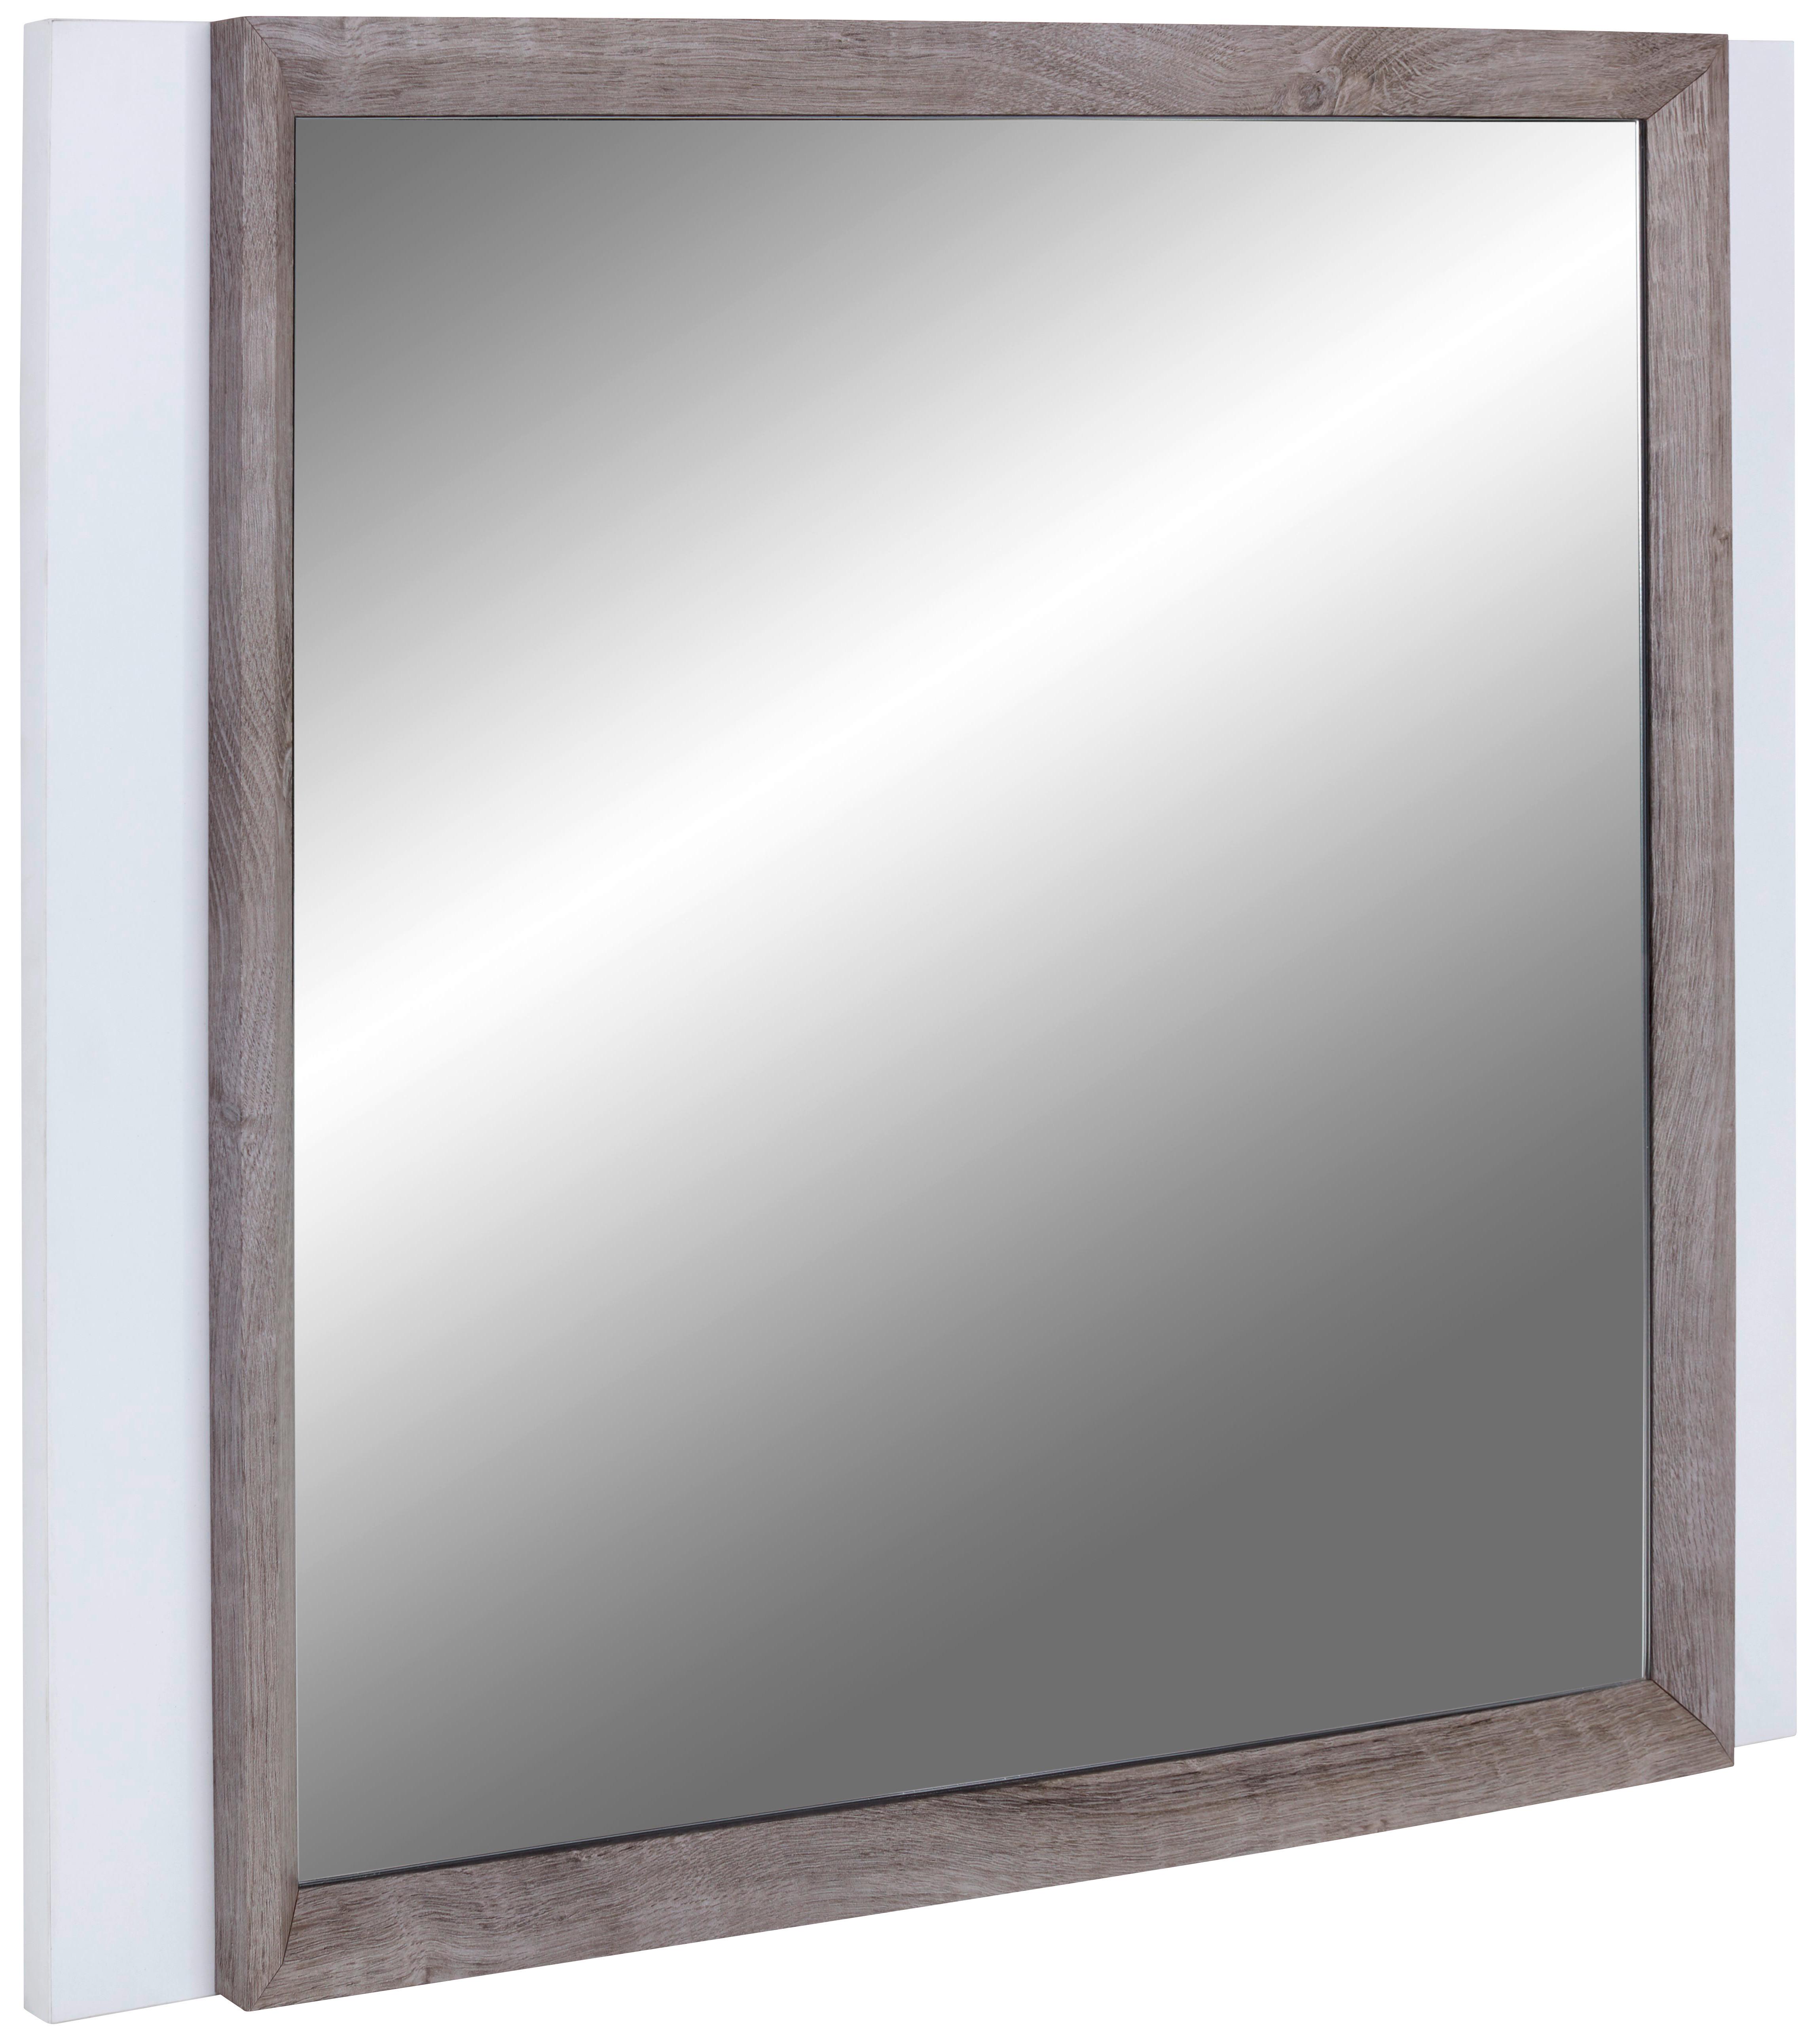 Ogledalo Nagos - barve hrasta/bela, Moderno, leseni material (90/65/3,4cm) - Modern Living